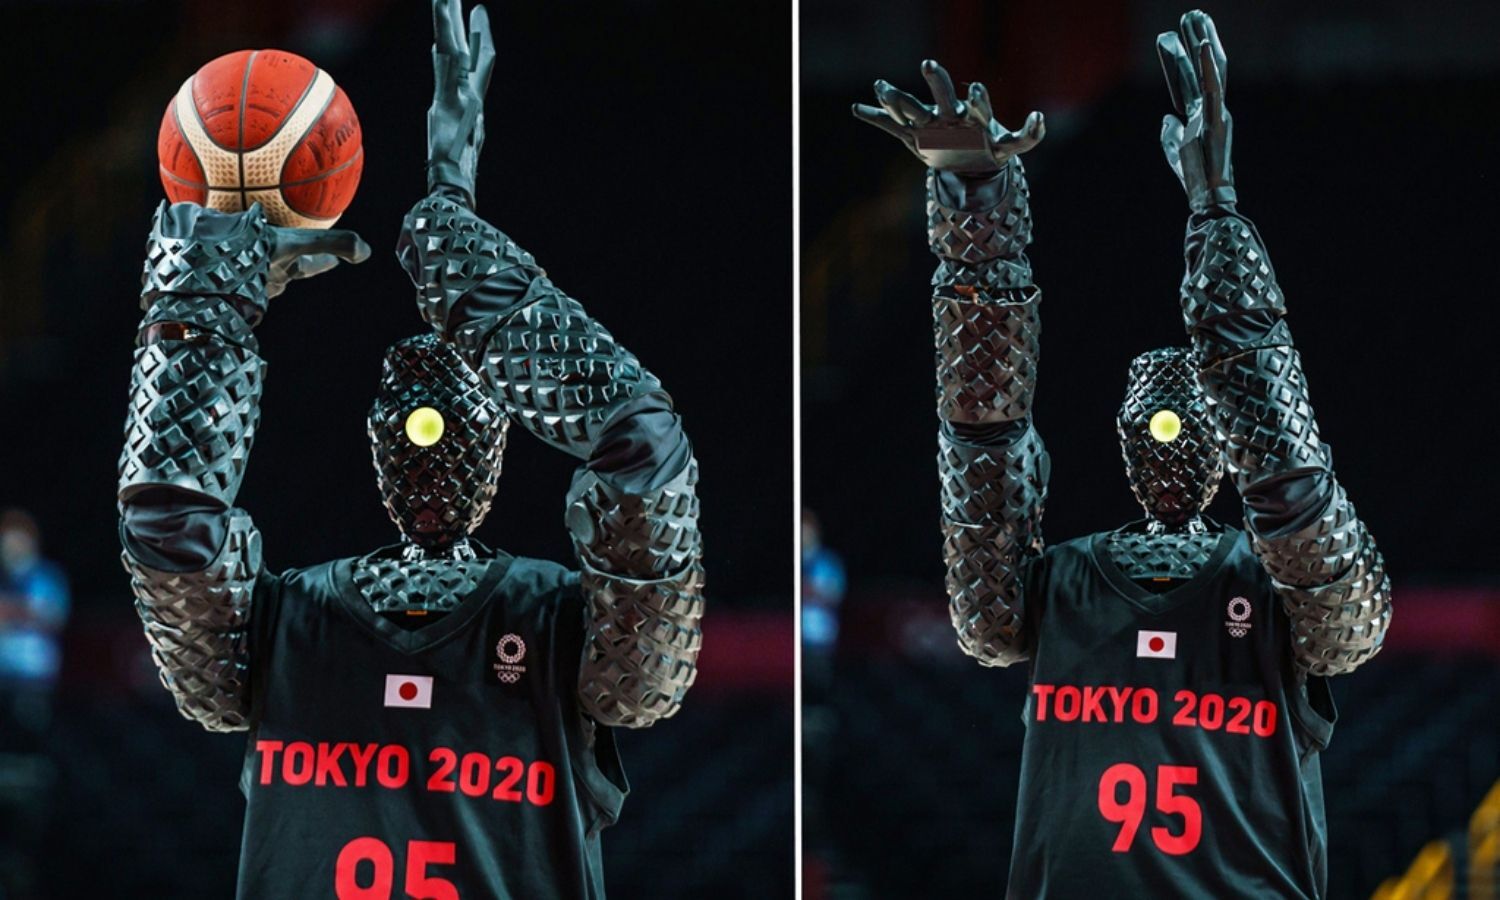 Ιαπωνικό ρομπότ εκτελεί βολές και κλέβει την παράσταση στους Ολυμπιακούς Αγώνες του Τόκιο